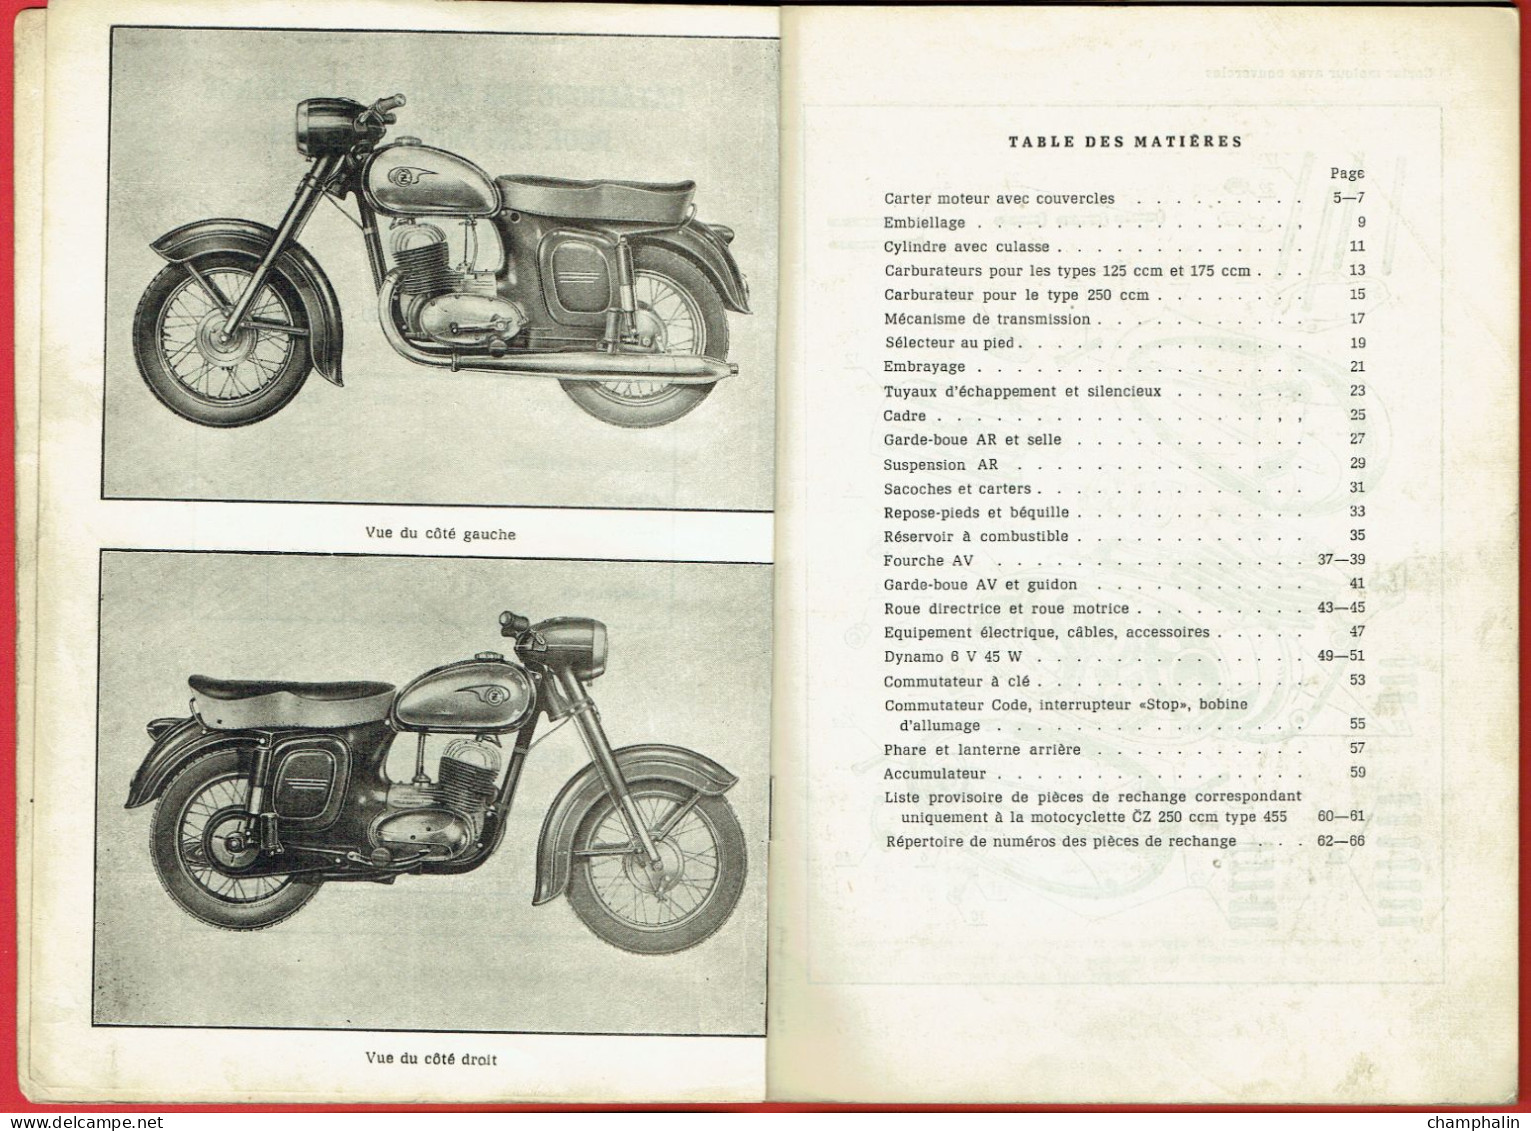 Catalogue Des Pièces De Rechange Pour Les Motocyclettes CZ - 125ccm Type 453 - 175ccm Type 450 - 250ccm Type 455 - 1962 - Motorfietsen